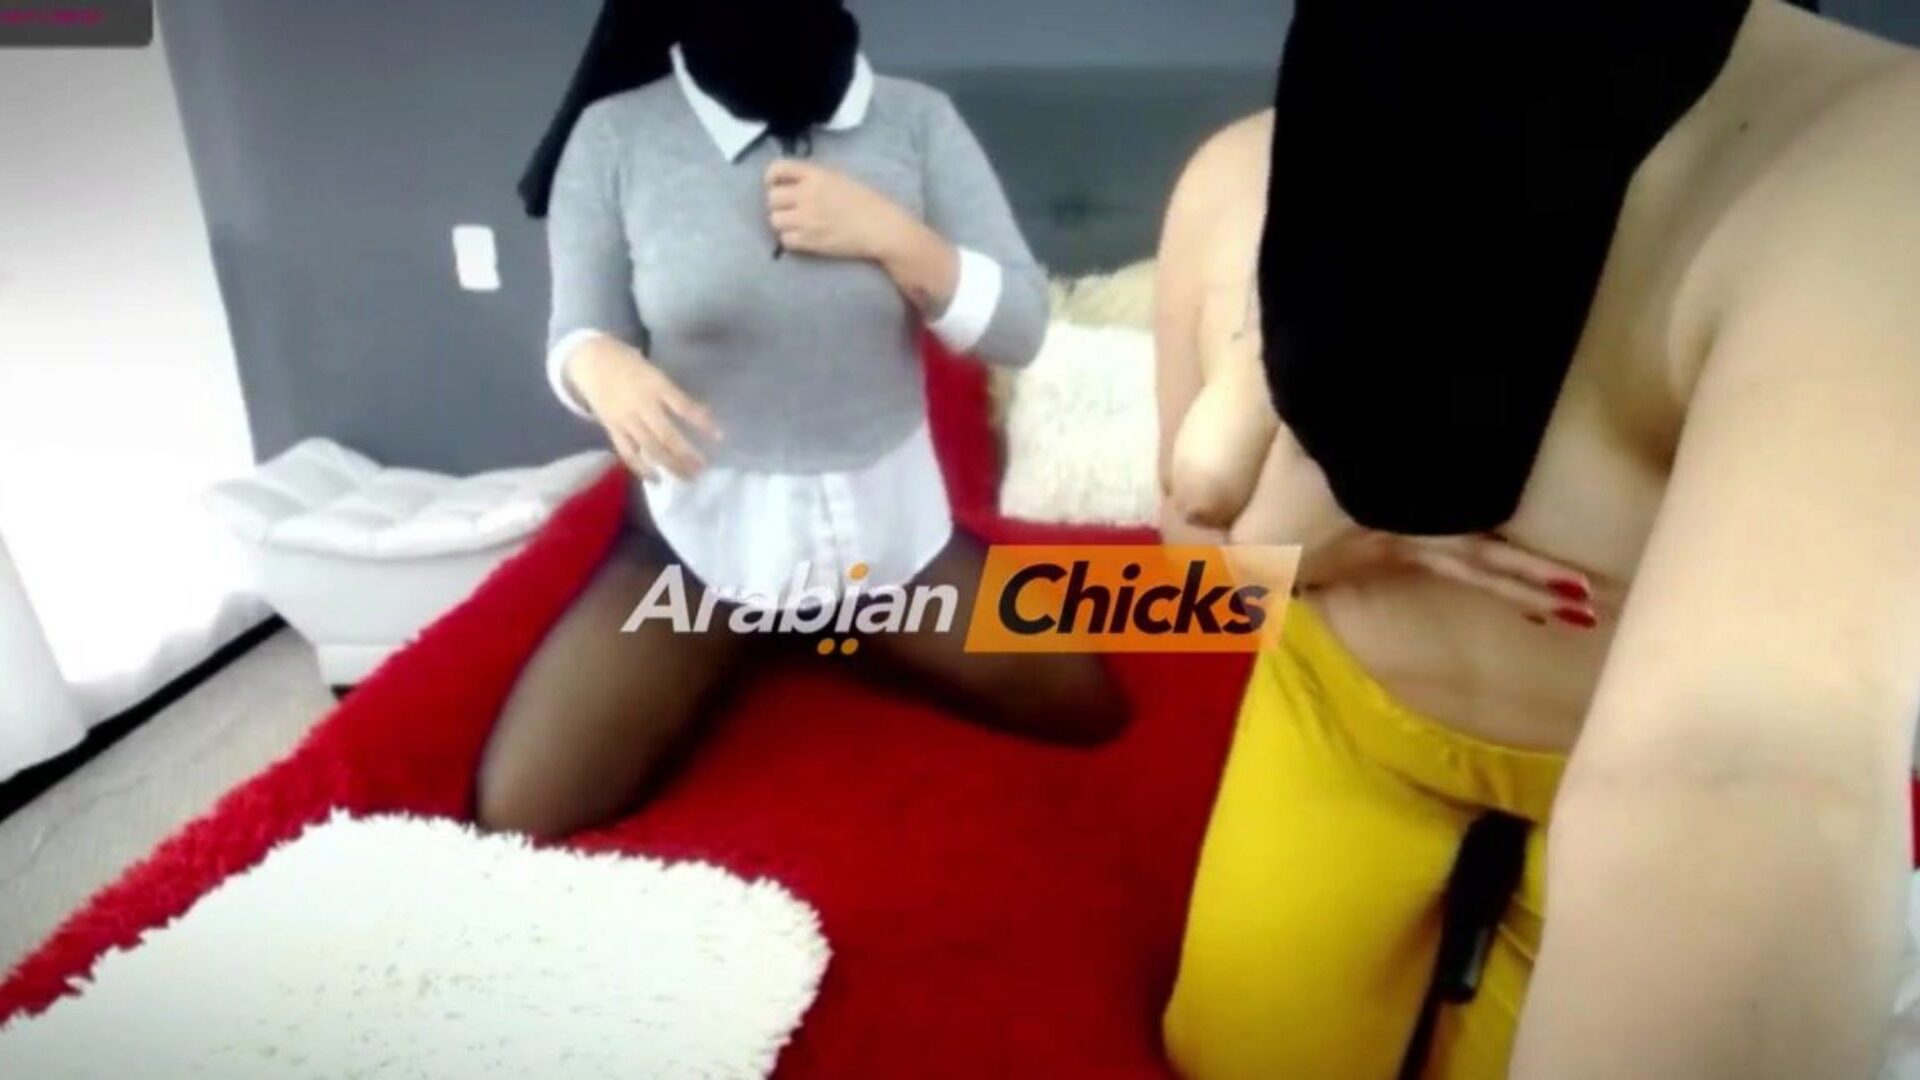 2 arapska lezbijska hidžaba na web kameri na arabianchicks: porno 93 gledajte dva arapska lezbijska hidžaba na web kameri na arabianchicks filmskoj sceni na xhamsteru - ultimativnoj cijevi besplatnih lezbijskih xxx cijevi i novih arapskih hd porno videa